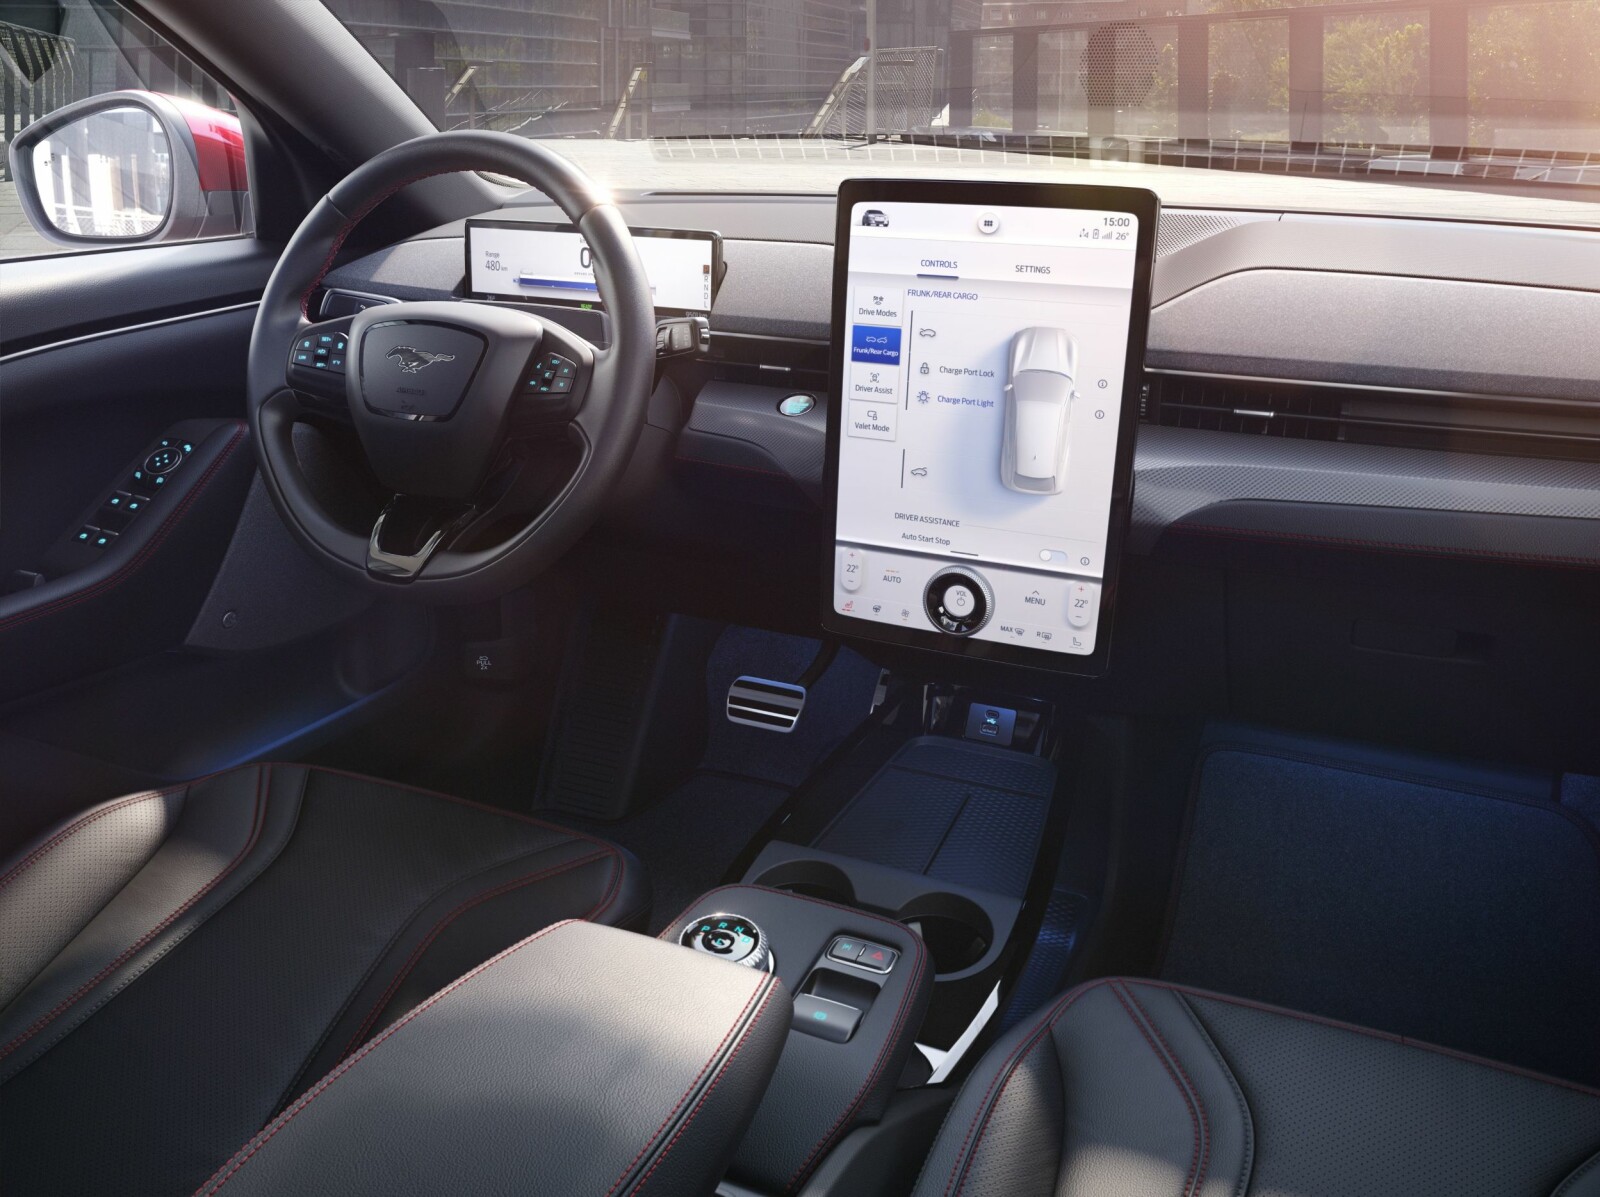 <b>MININMALISTISK:</b> Som Tesla Model S har Mustang Mach-E en stor vertikalt stilt skjerm hvor du betjener det meste ved bilen. Den digitale skjermen foran rattet viser hastighet, rekkevidde og batterikapasitet. Mach-E har tre kjøreinnstillinger, Aktiv, Stille og Utemmet, som justerer gassresponsen, hardheten på styringen og lydbildet.